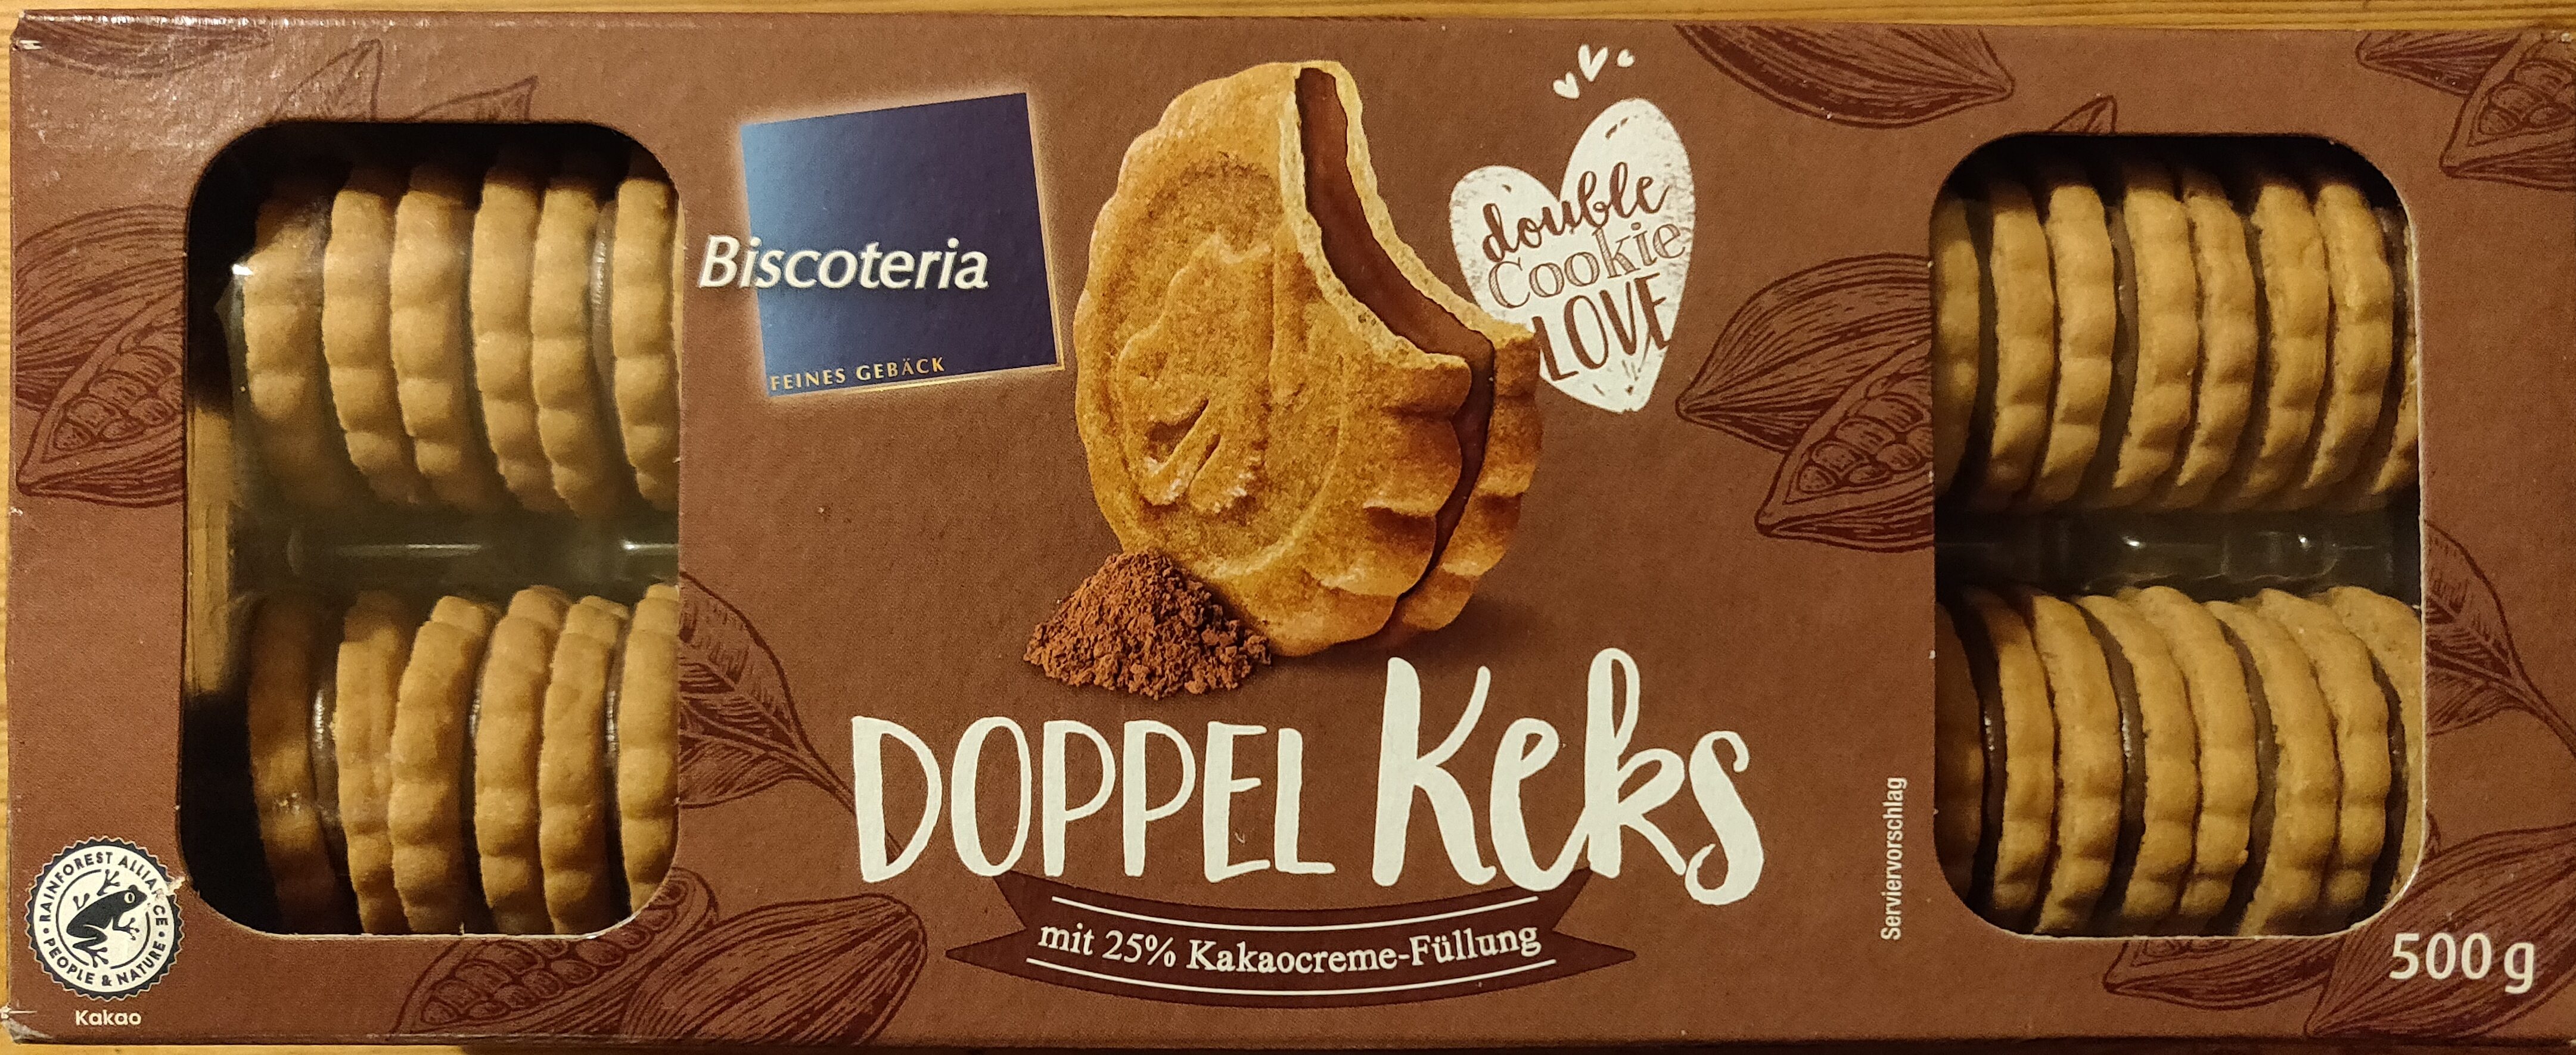 Doppel Keks - Product - de